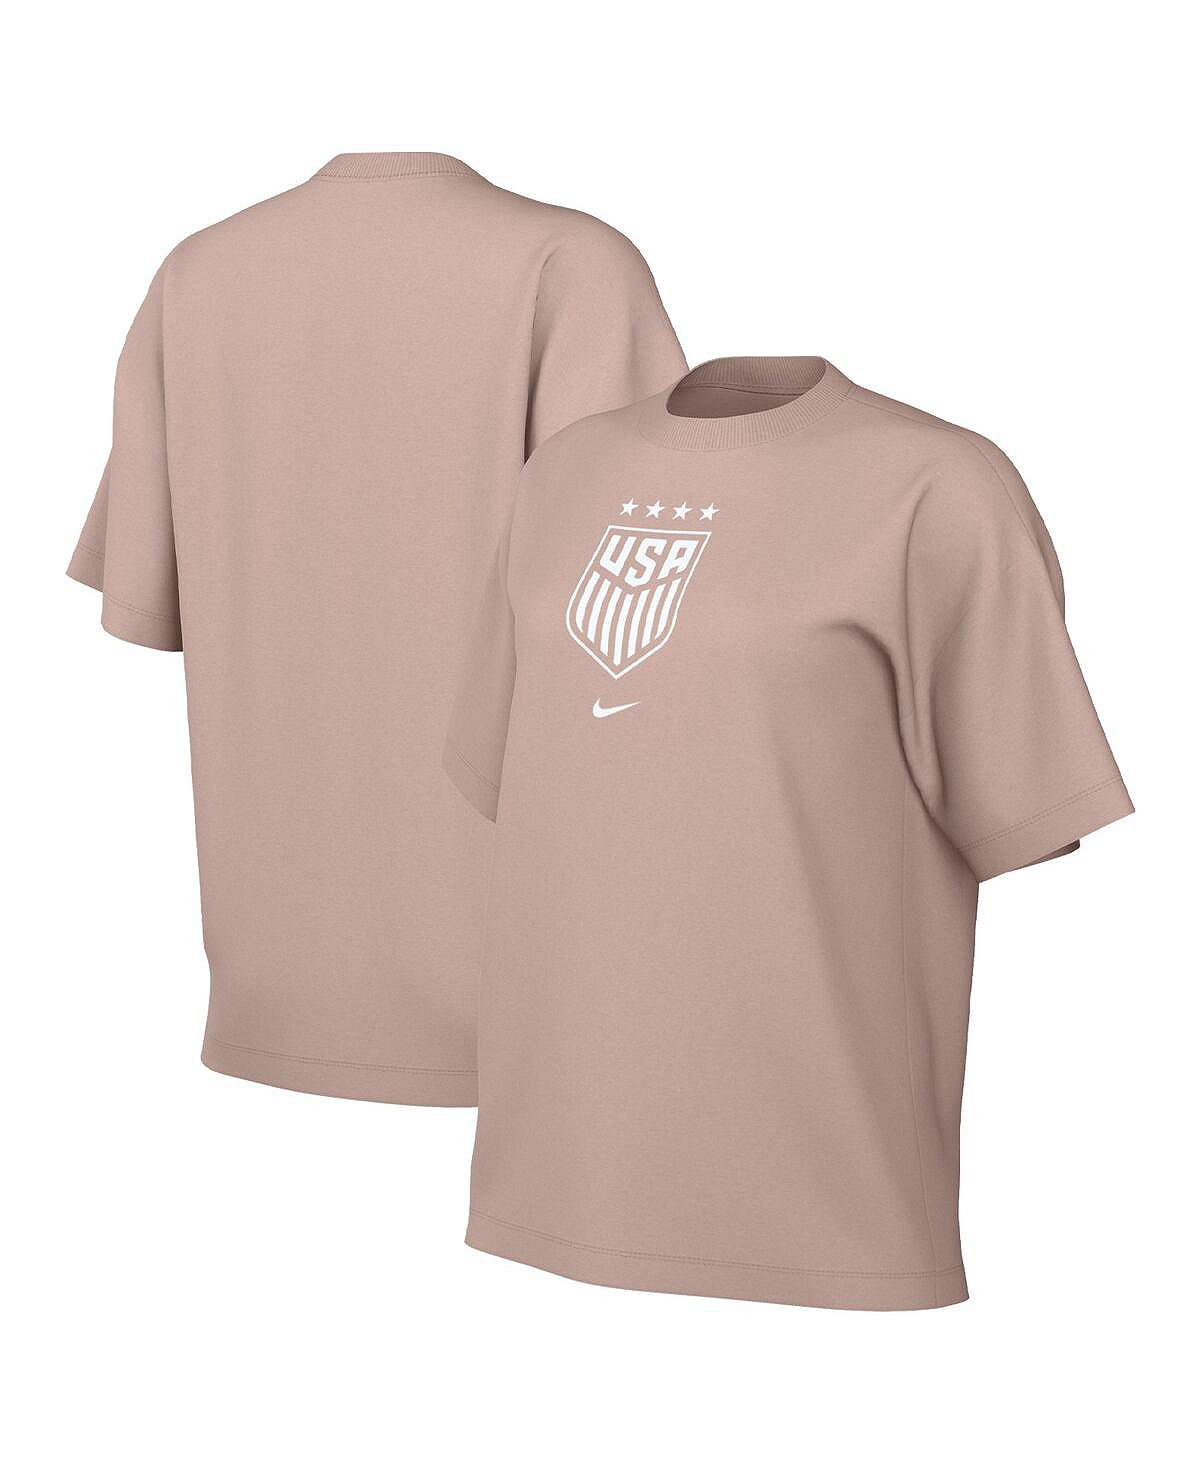 цена Женская светло-коричневая футболка с гербом USWNT Nike